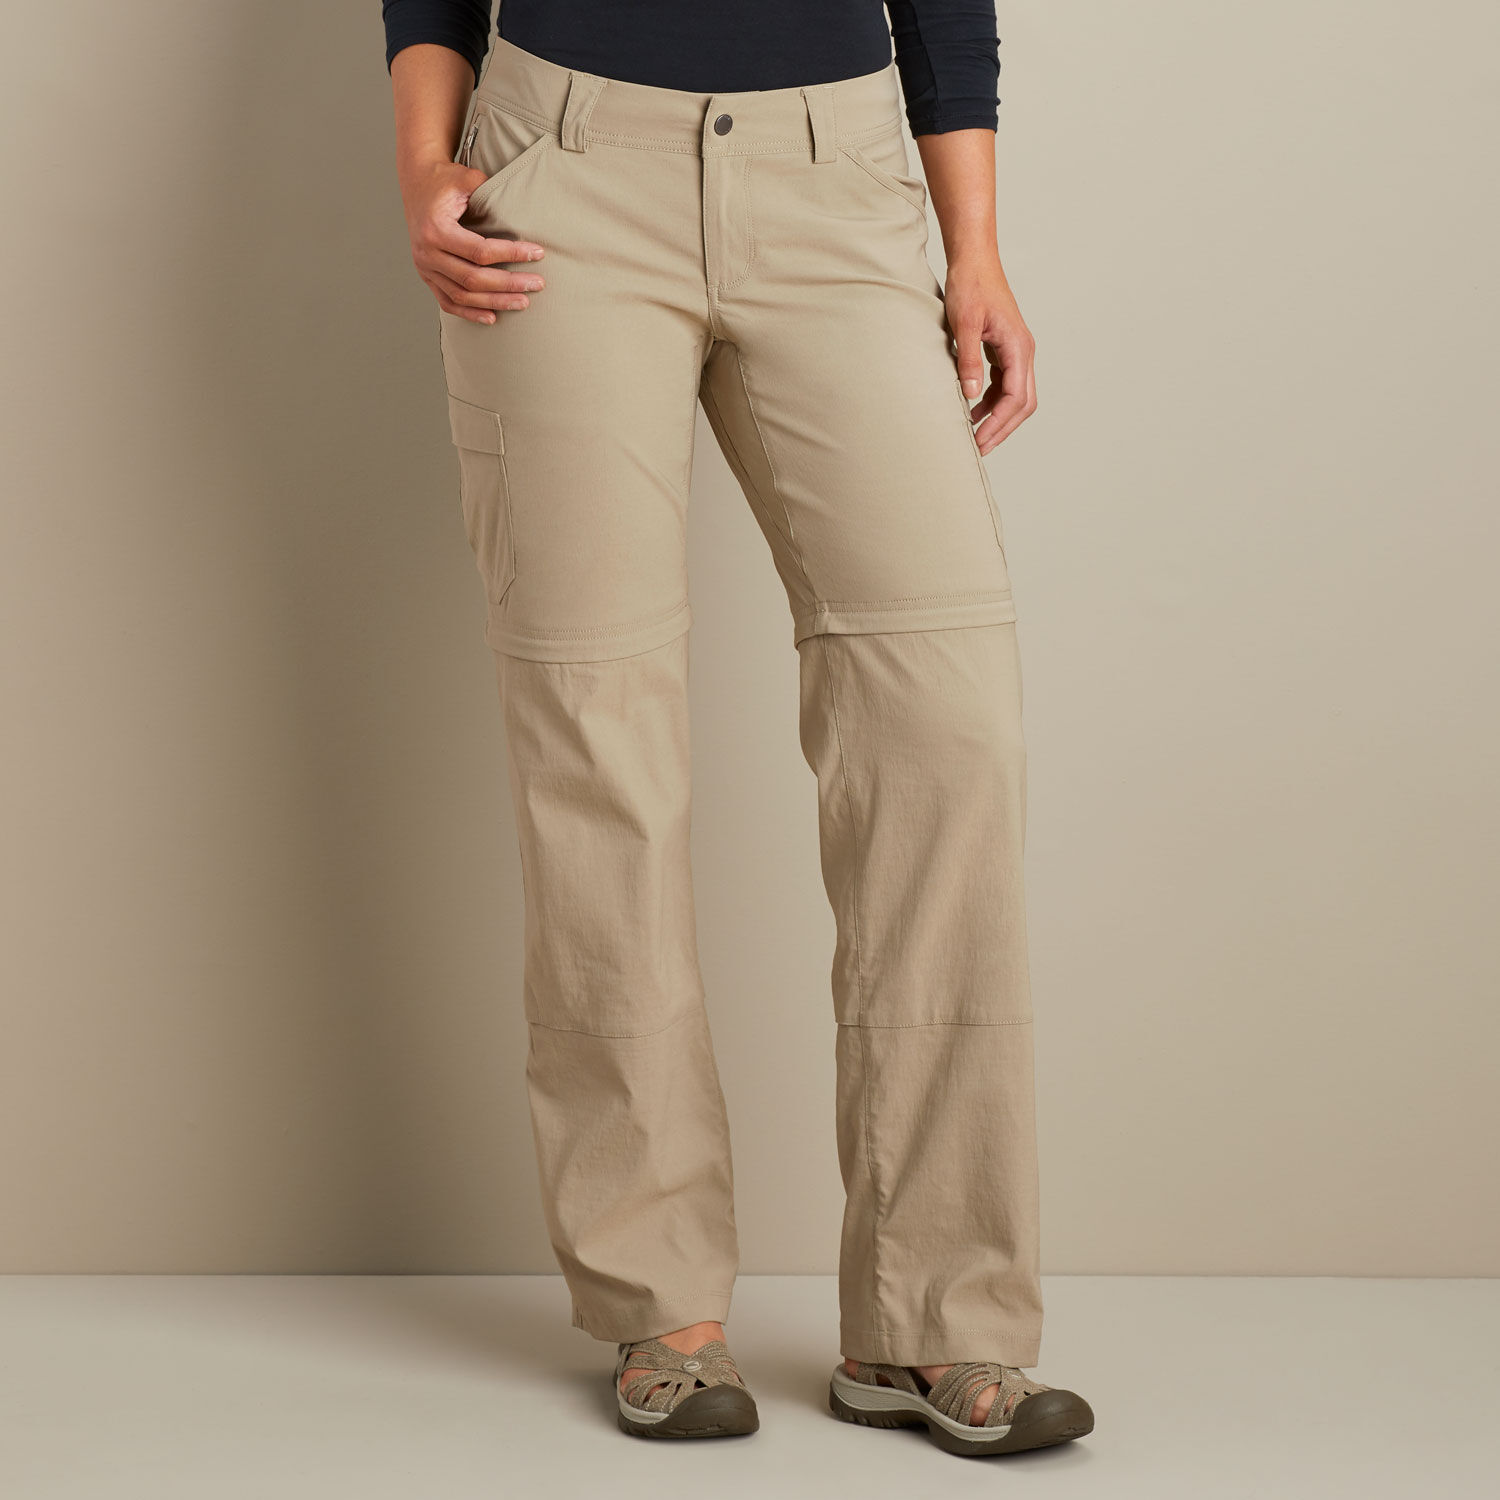 Vaude Farley Stretch Zip Off T-Zip Pants II - Walking trousers Women's |  Free EU Delivery | Bergfreunde.eu